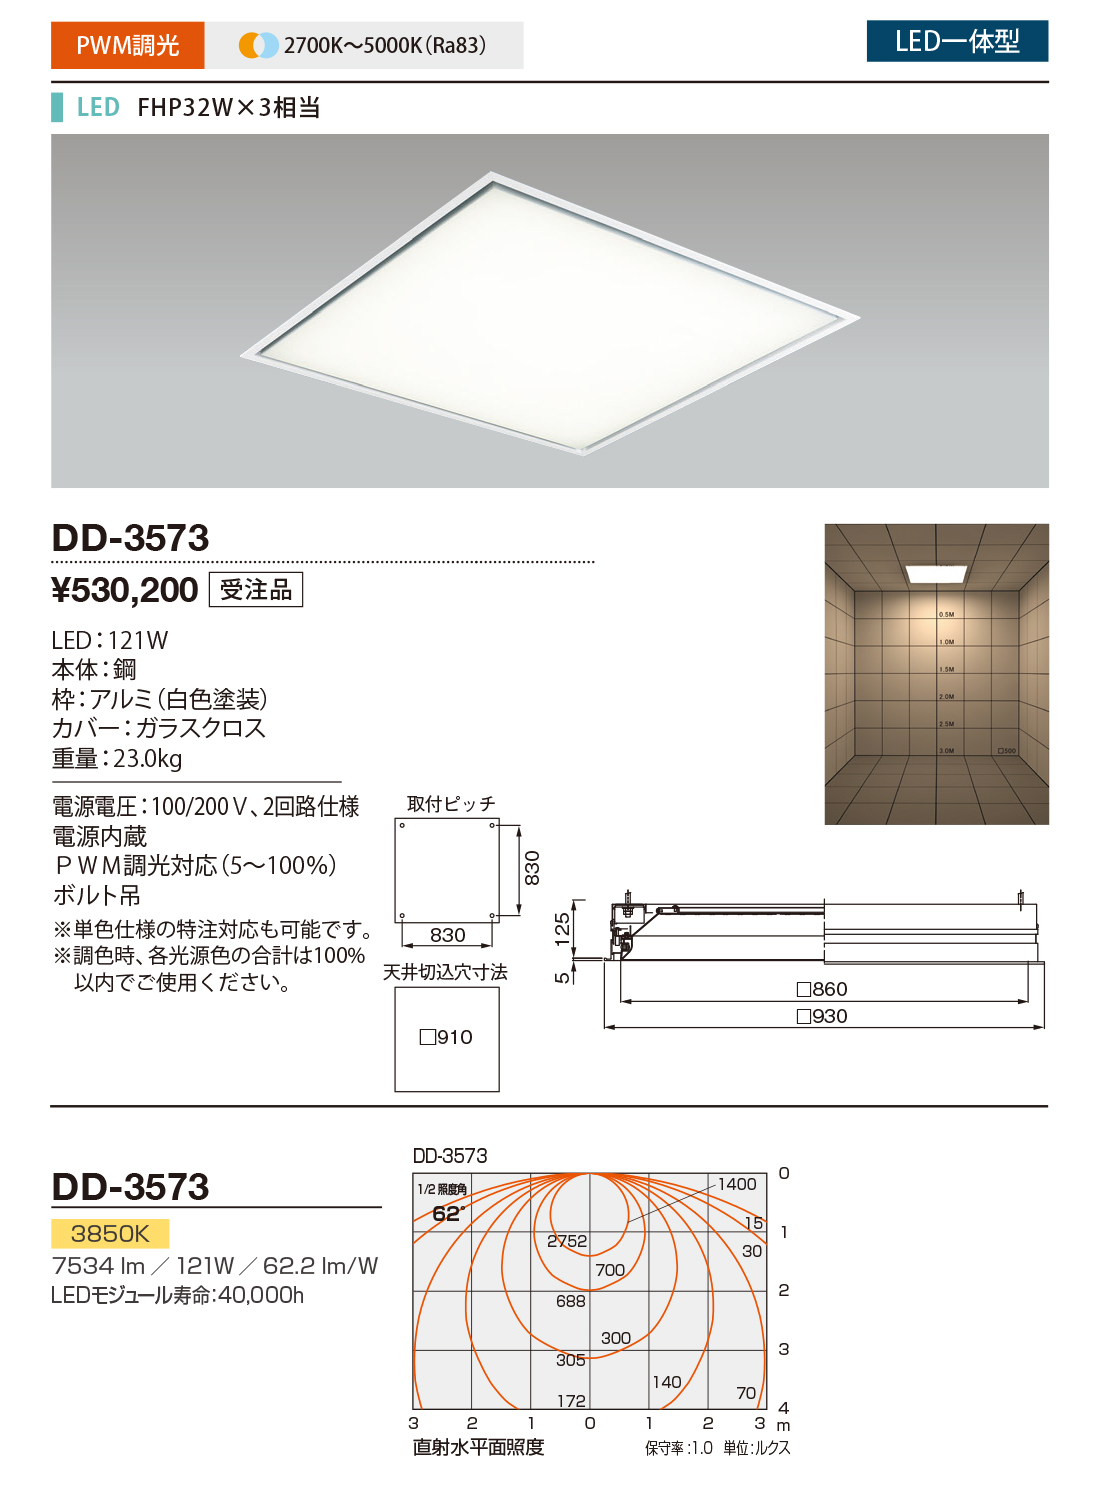 DD-3573(山田照明) 商品詳細 ～ 照明器具・換気扇他、電設資材販売の